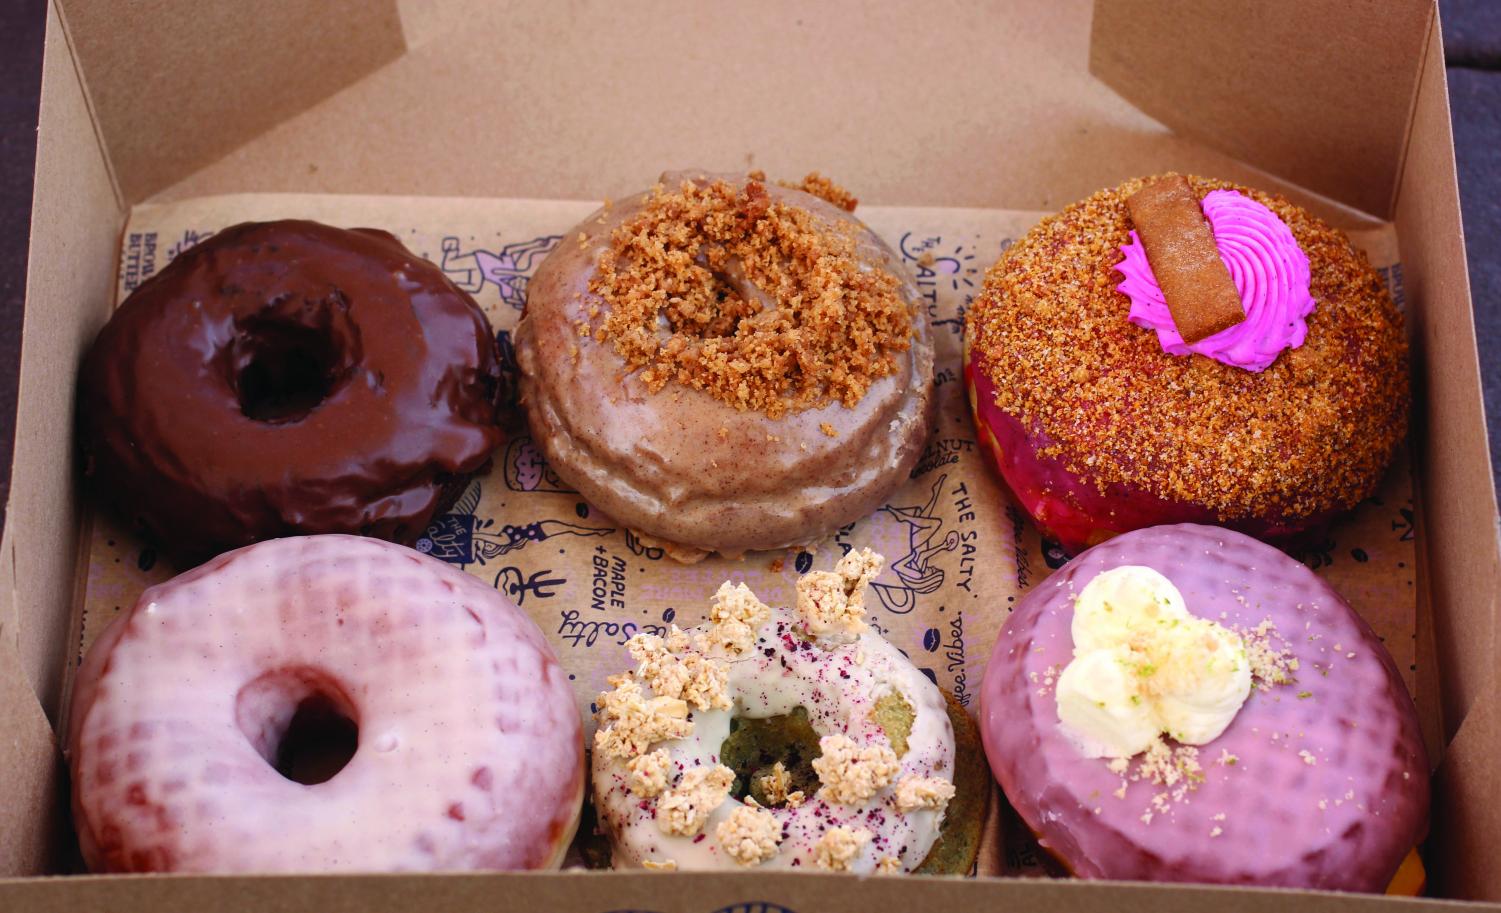 Trendy donut shop excites Austin – The Dispatch